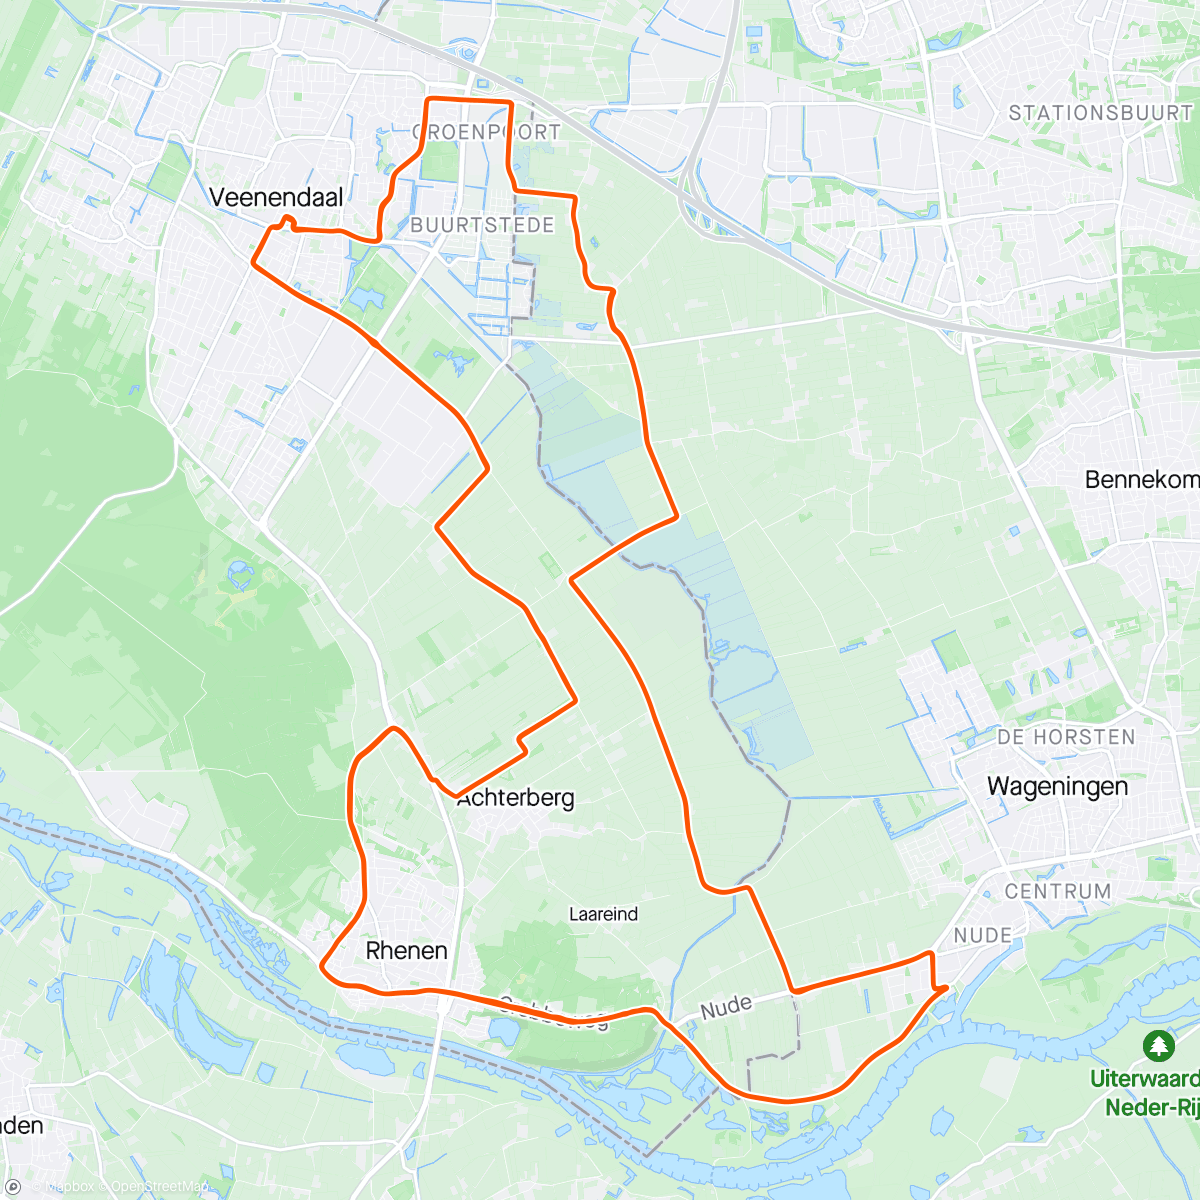 「Veenendaal-Veenendaal」活動的地圖